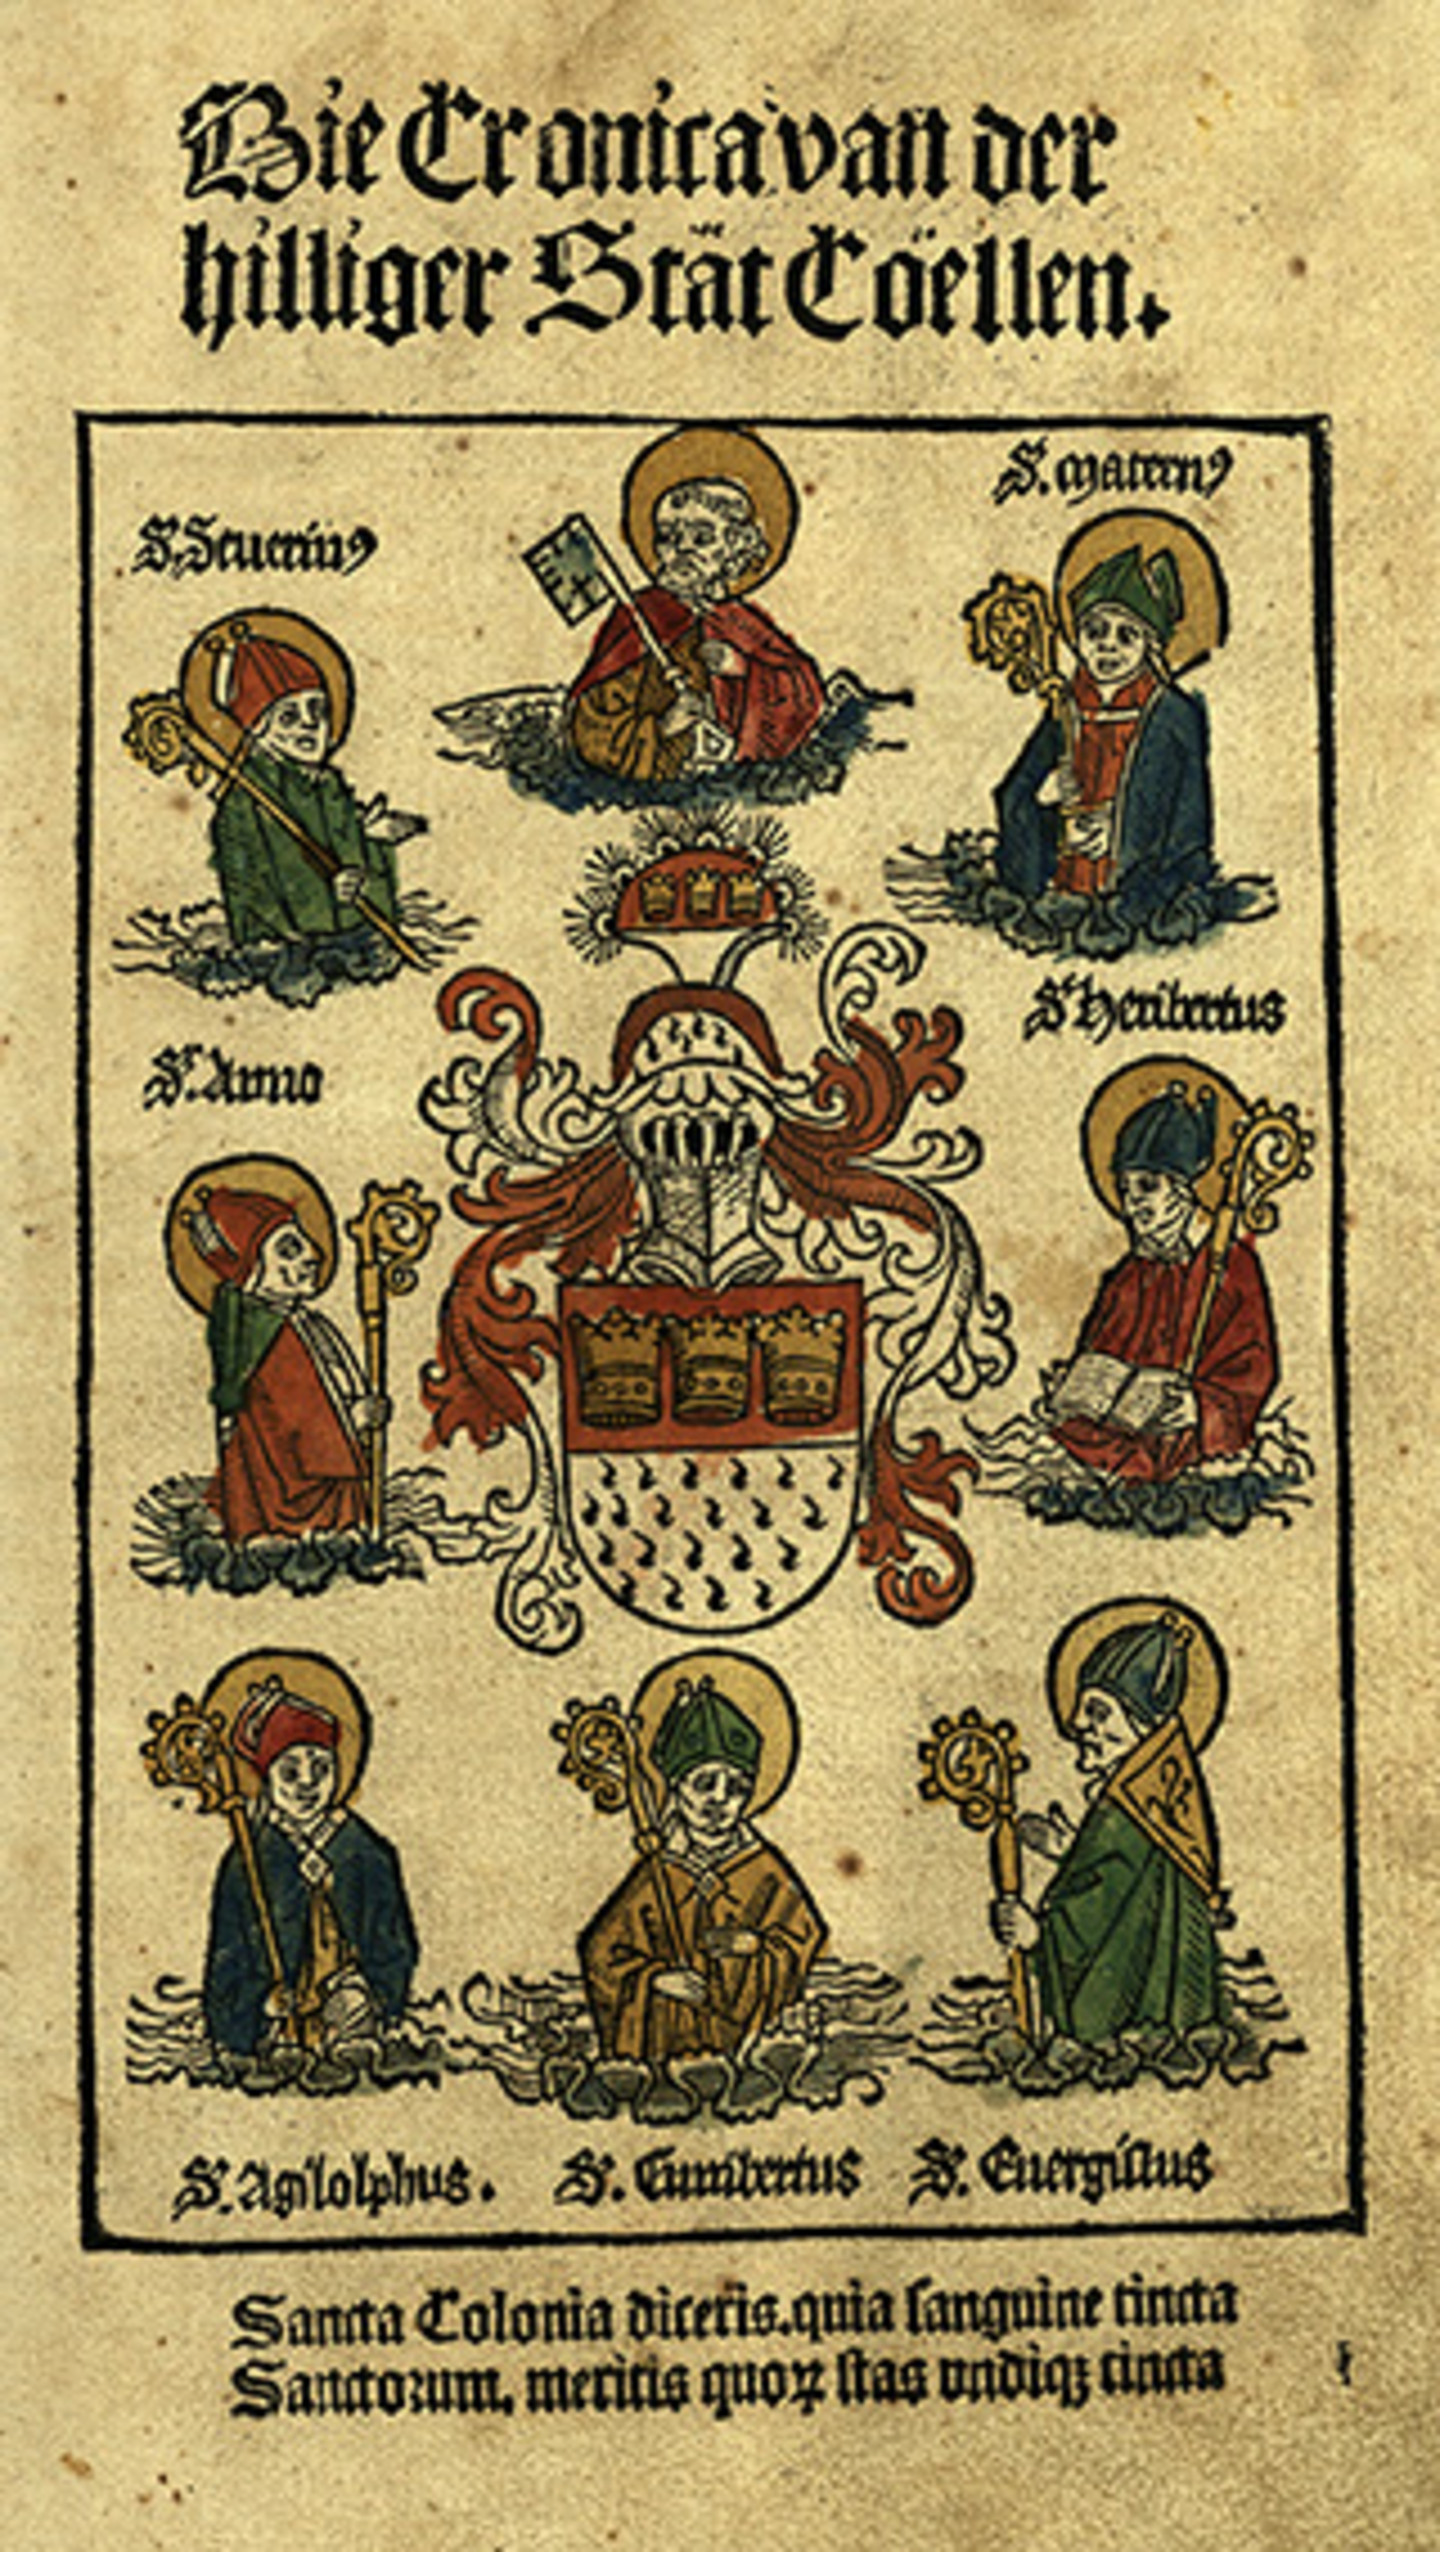 Dargestellt ist das Titelblatt der Kölnischen Chronik 1499. Aufgeführt sind 8 heilige Personen mit dem Titel "Die Chronika von der heiligen Stadt Köln"